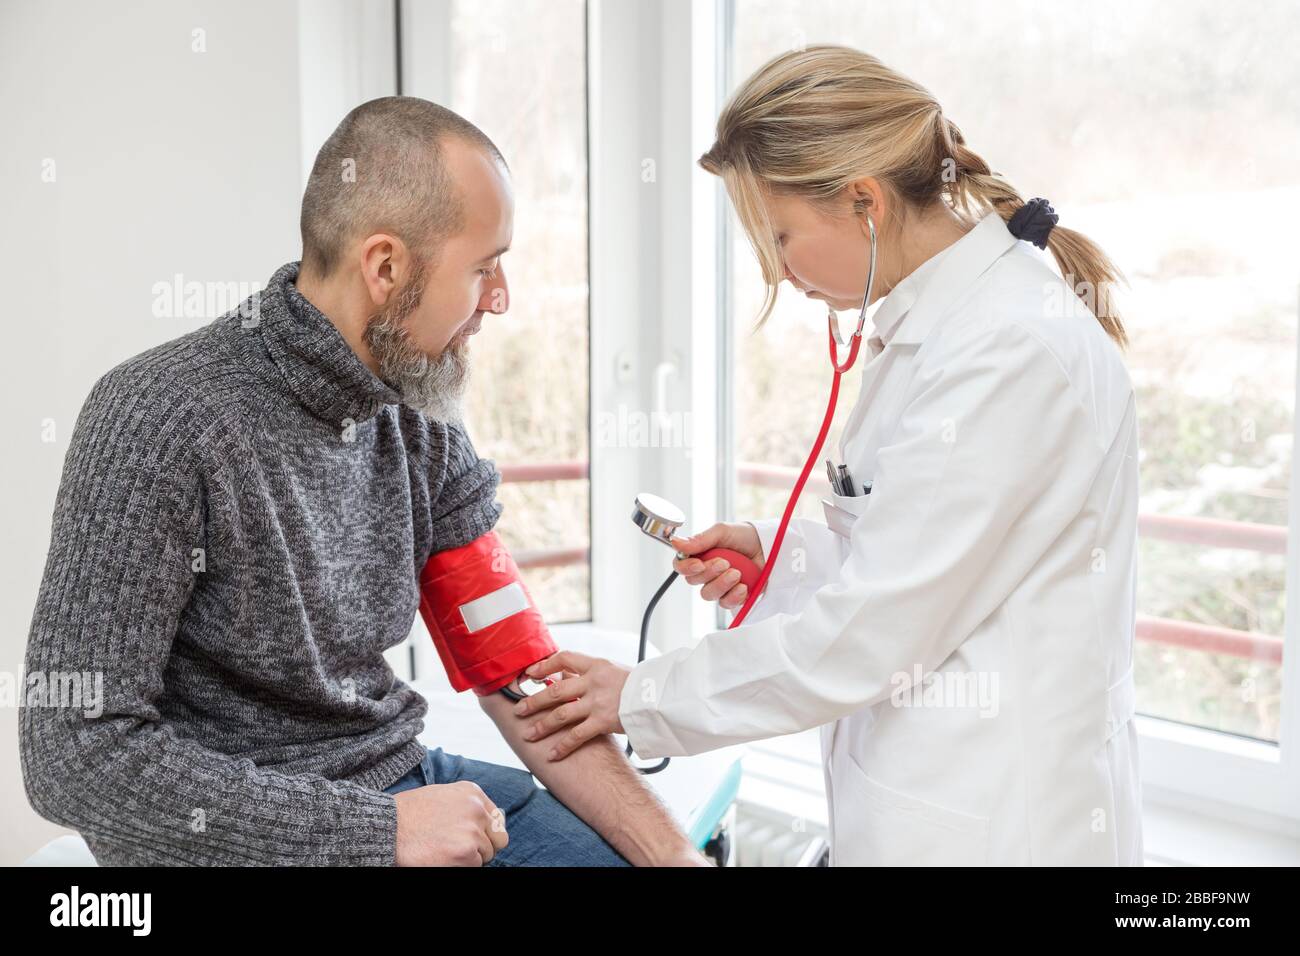 il medico femminile sta facendo un esame con un paziente maschio, concetto di virus corona o covid-19, sars-cov-2 Foto Stock